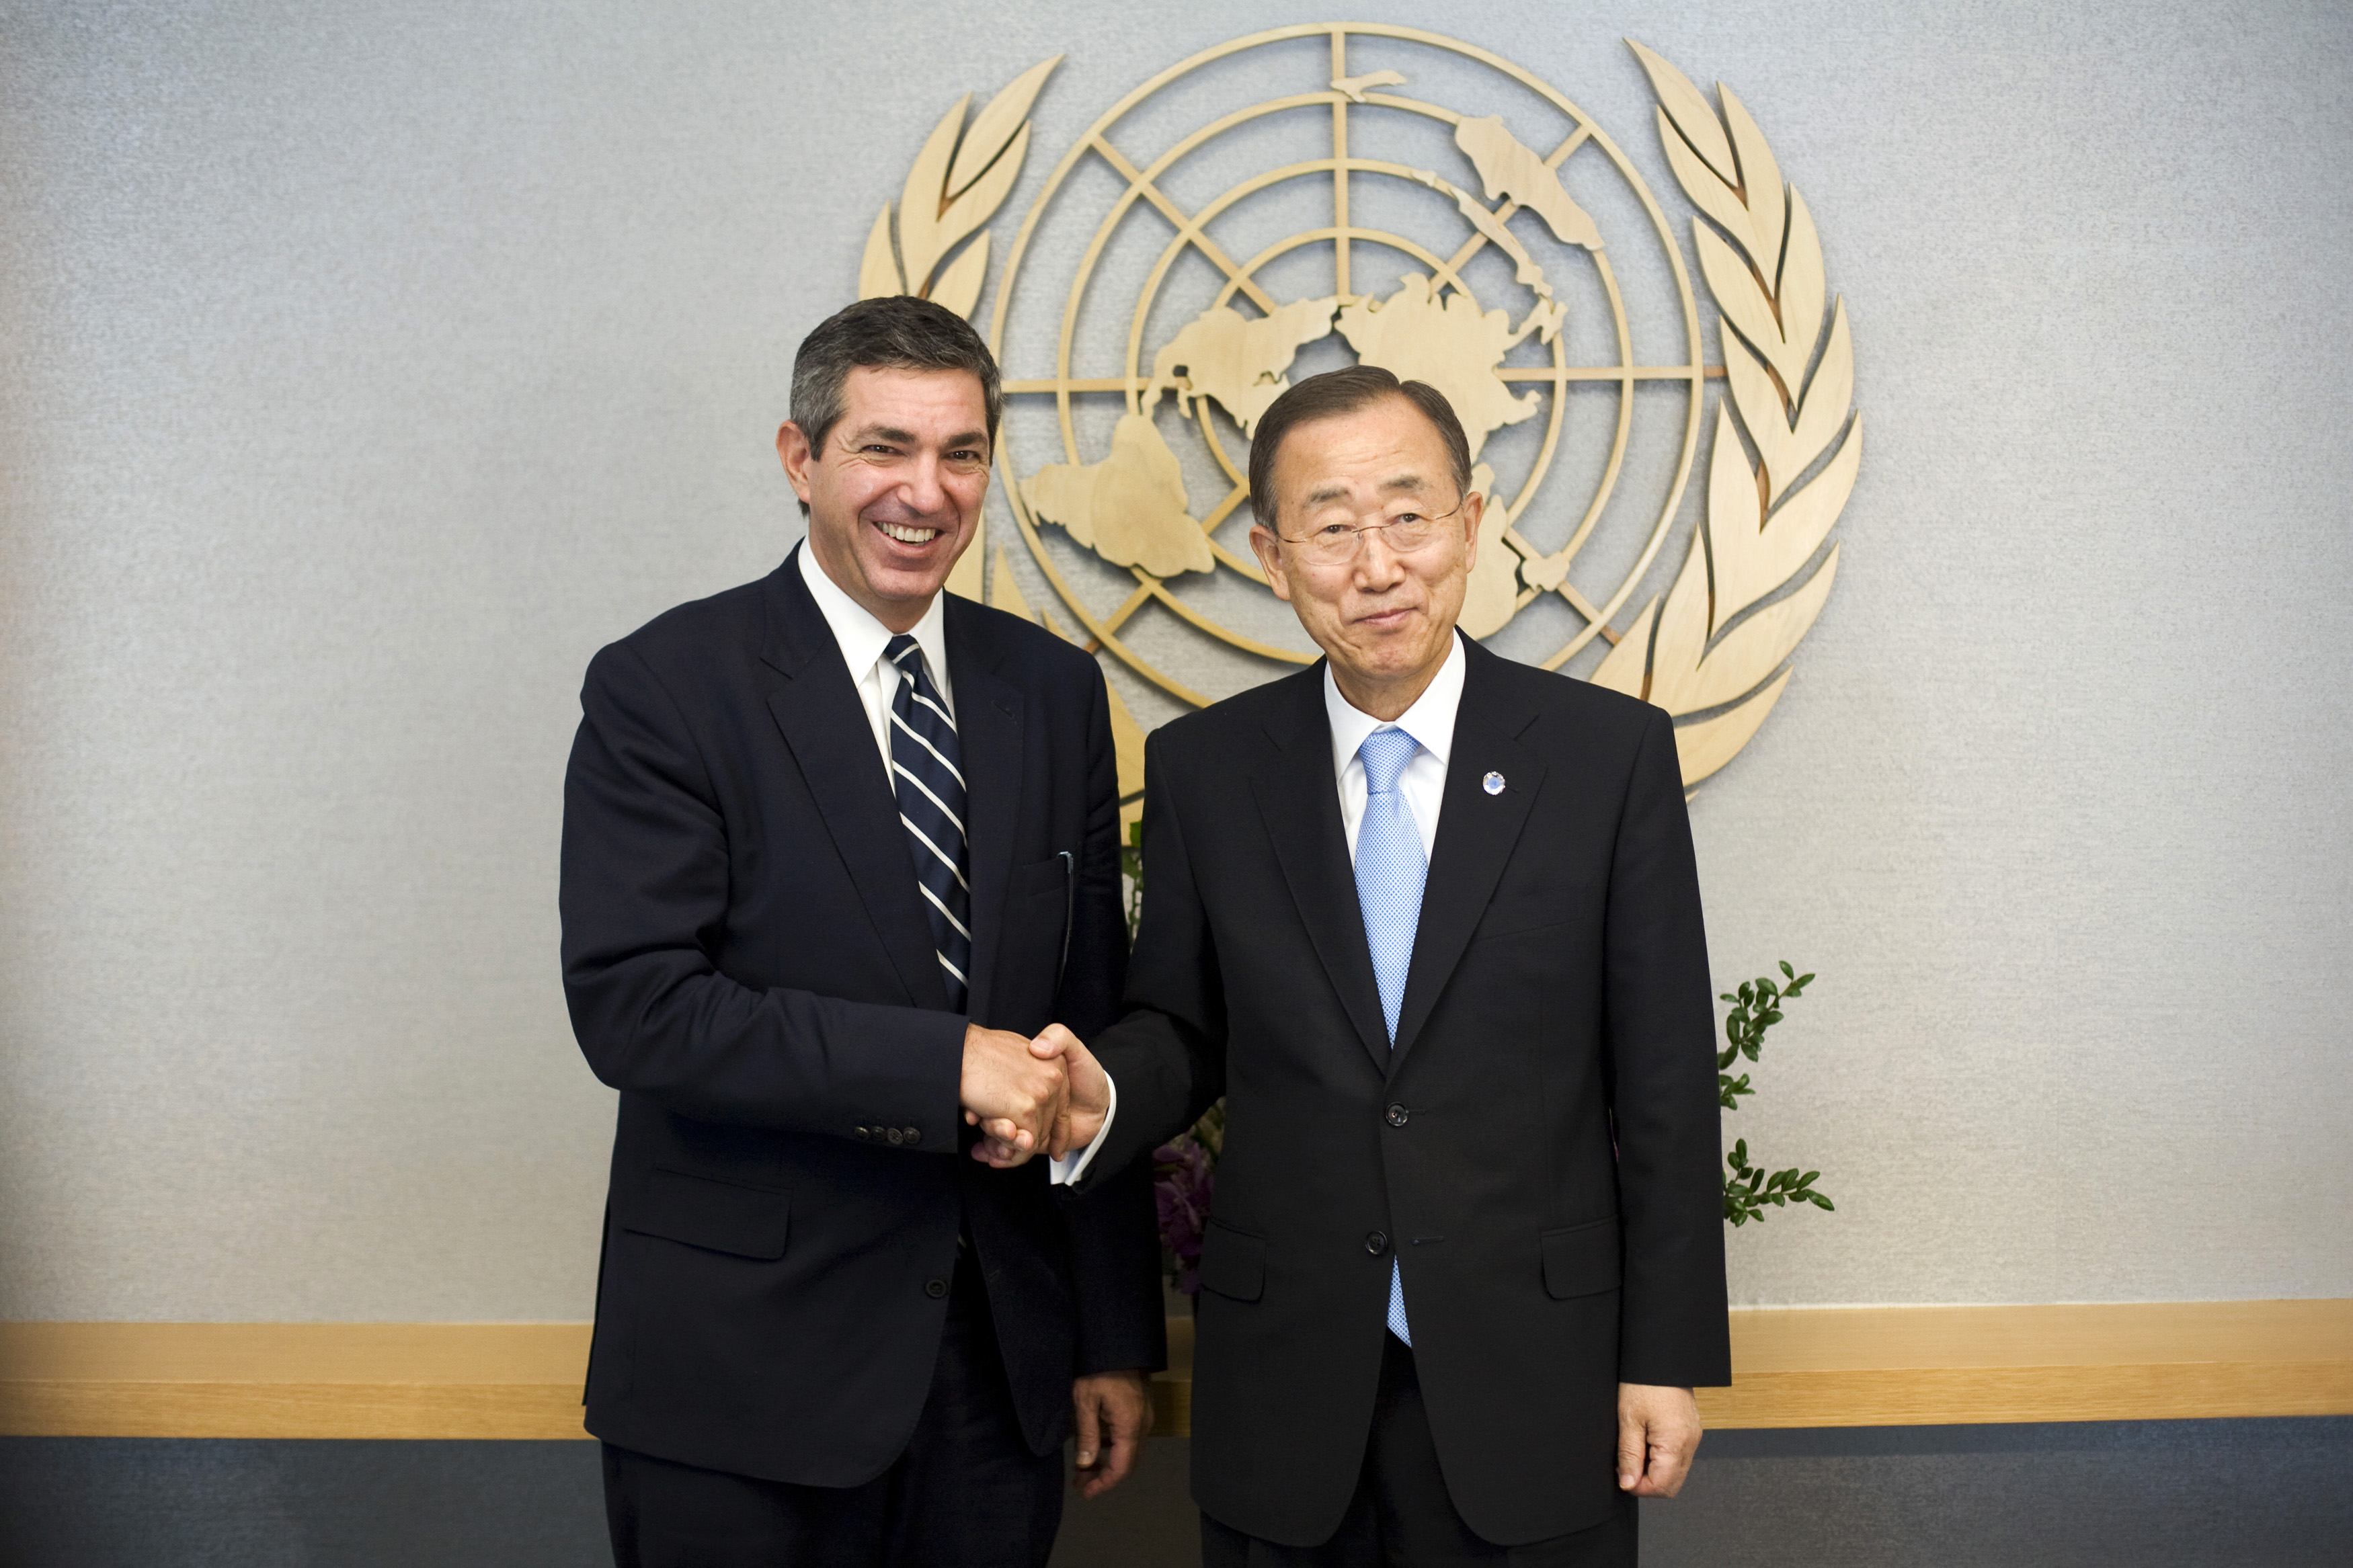 Συναντήσεις του Σ. Λαμπρινίδη στο περιθώριο της Γ.Σ. του ΟΗΕ